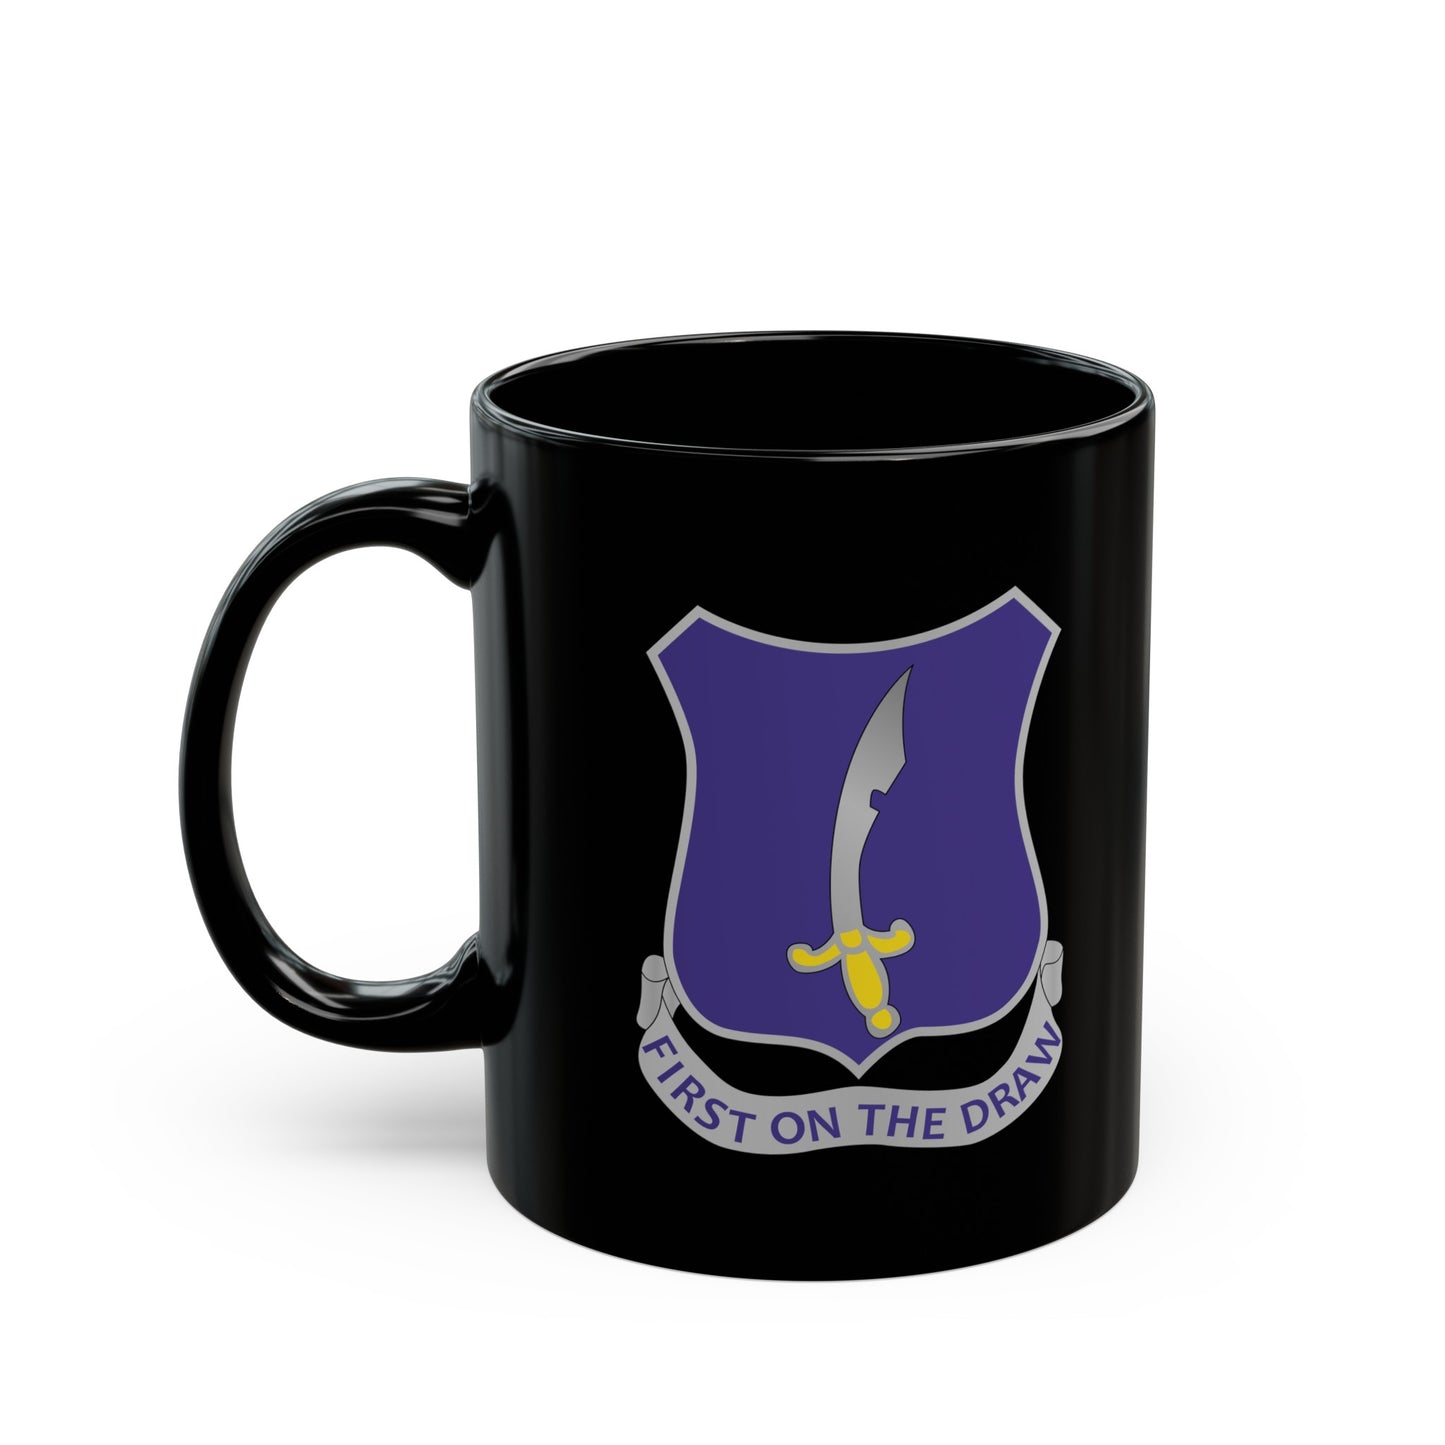 Black Mug 15oz - Army - 369th Infantry Regiment - "First on the Draw"